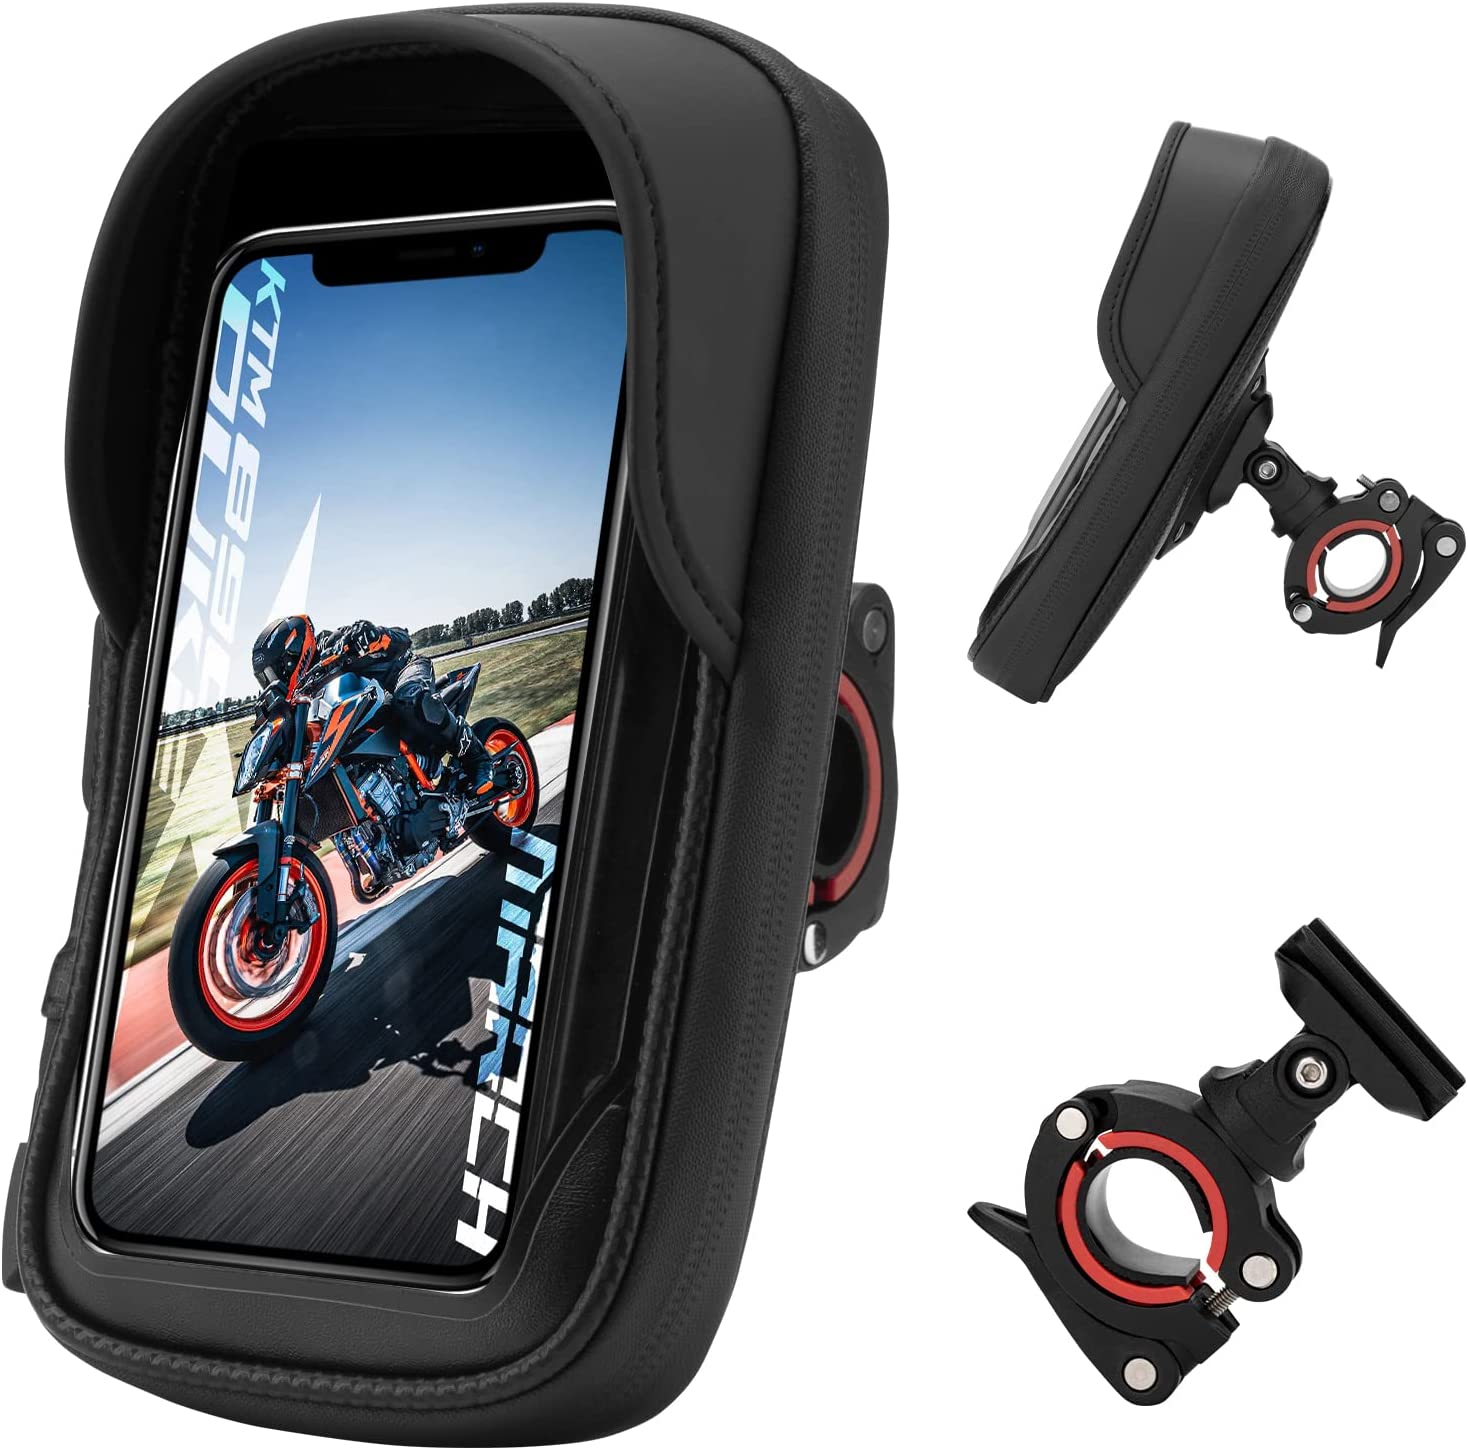 Support smartphone waterproof - grand Btob moto - ACCESSOIRES MOTO